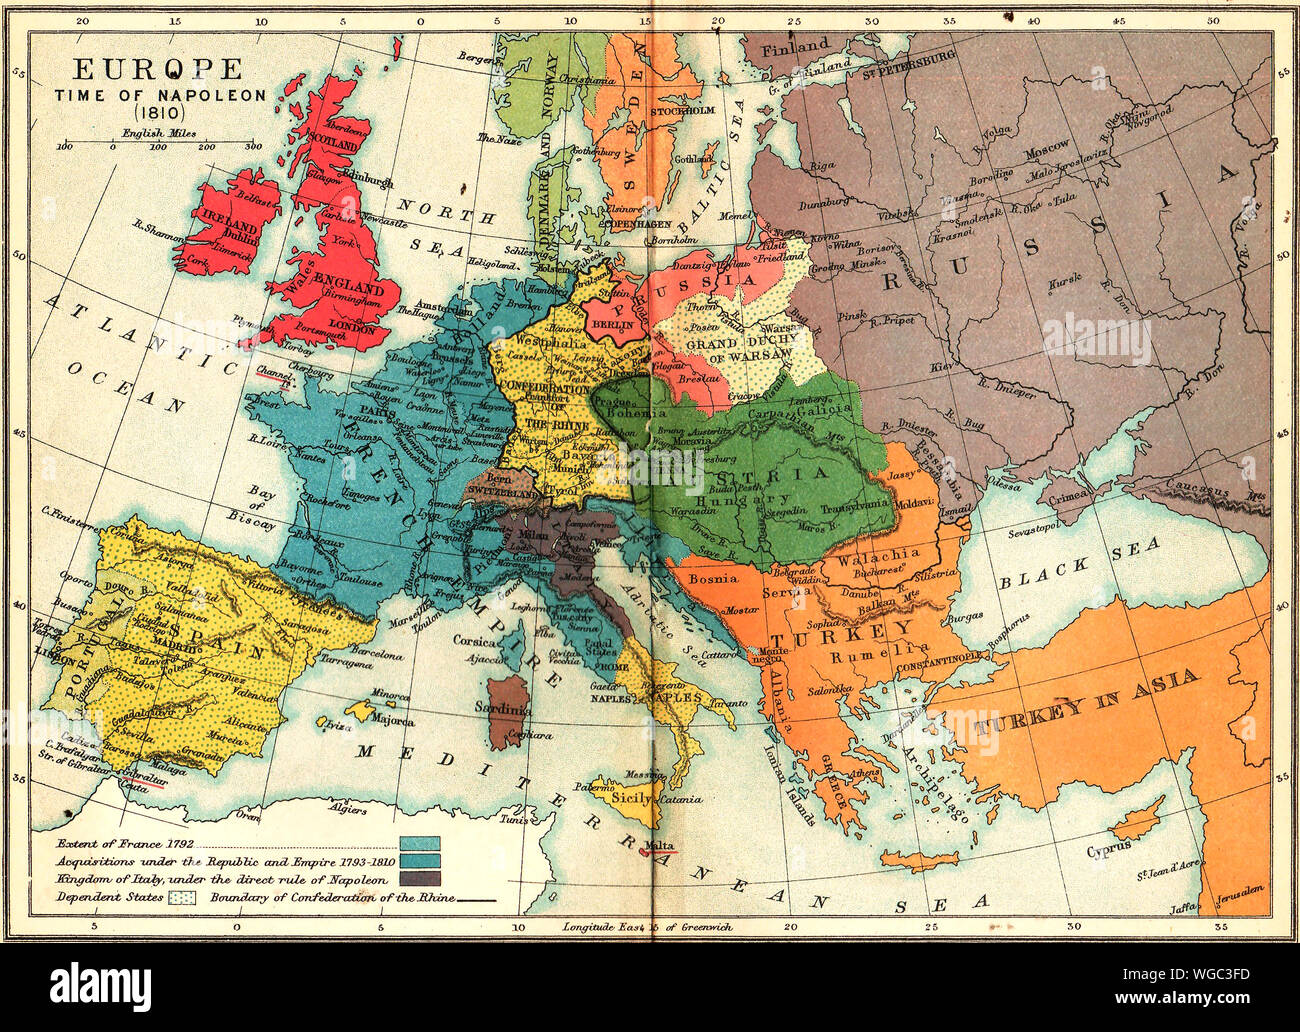 Eine 1910 Karte Europa, in der Zeit von Napoleon (1810) - Land von Frankreich im Jahre 1792 und ihre Akquisitionen bis 1810, Italien Königreich unter der Herrschaft von Napoleon abhängigen Staaten und Begrenzung des Rheinbundes. Stockfoto